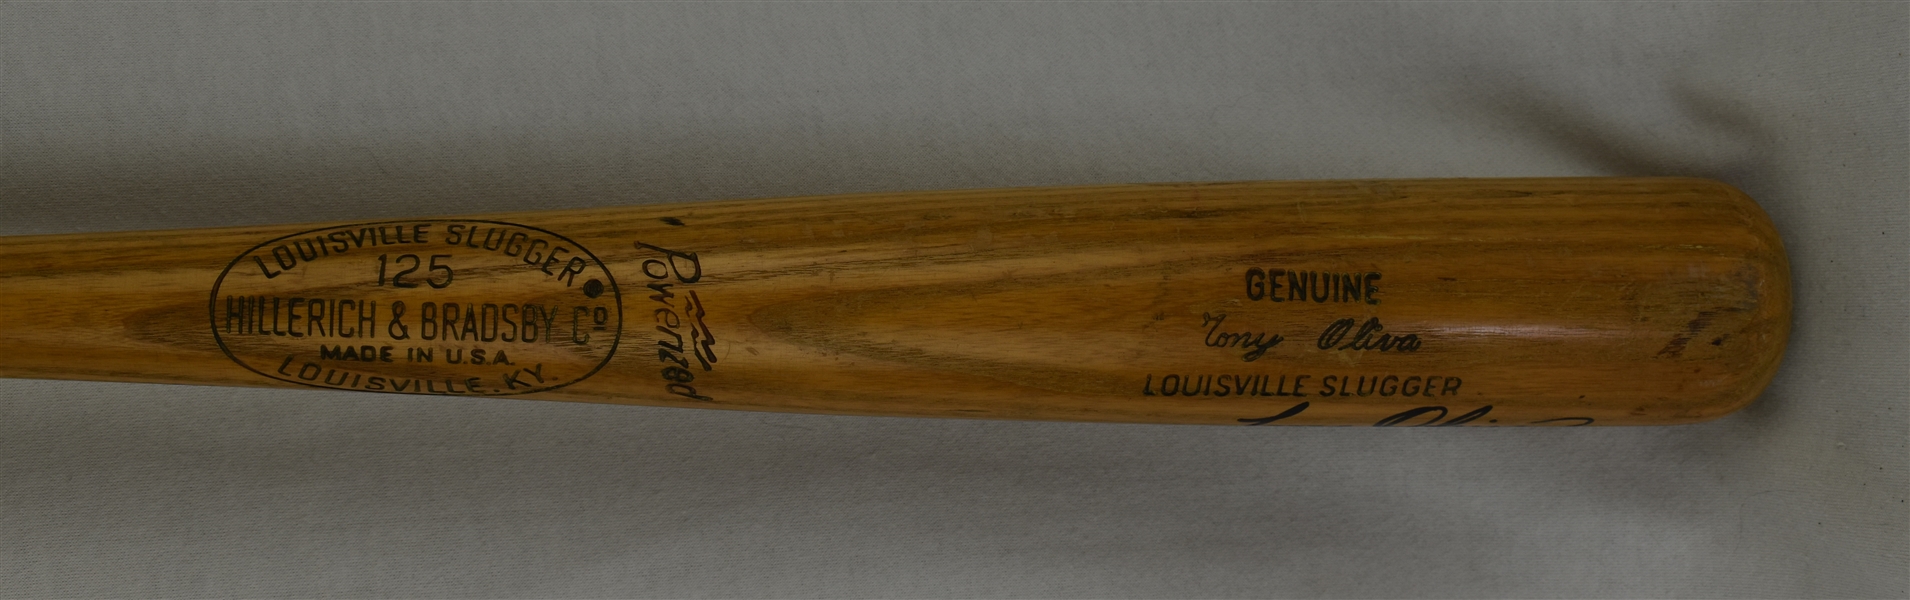 Tony Oliva Vintage Minnesota Twins Autographed K55 Bat